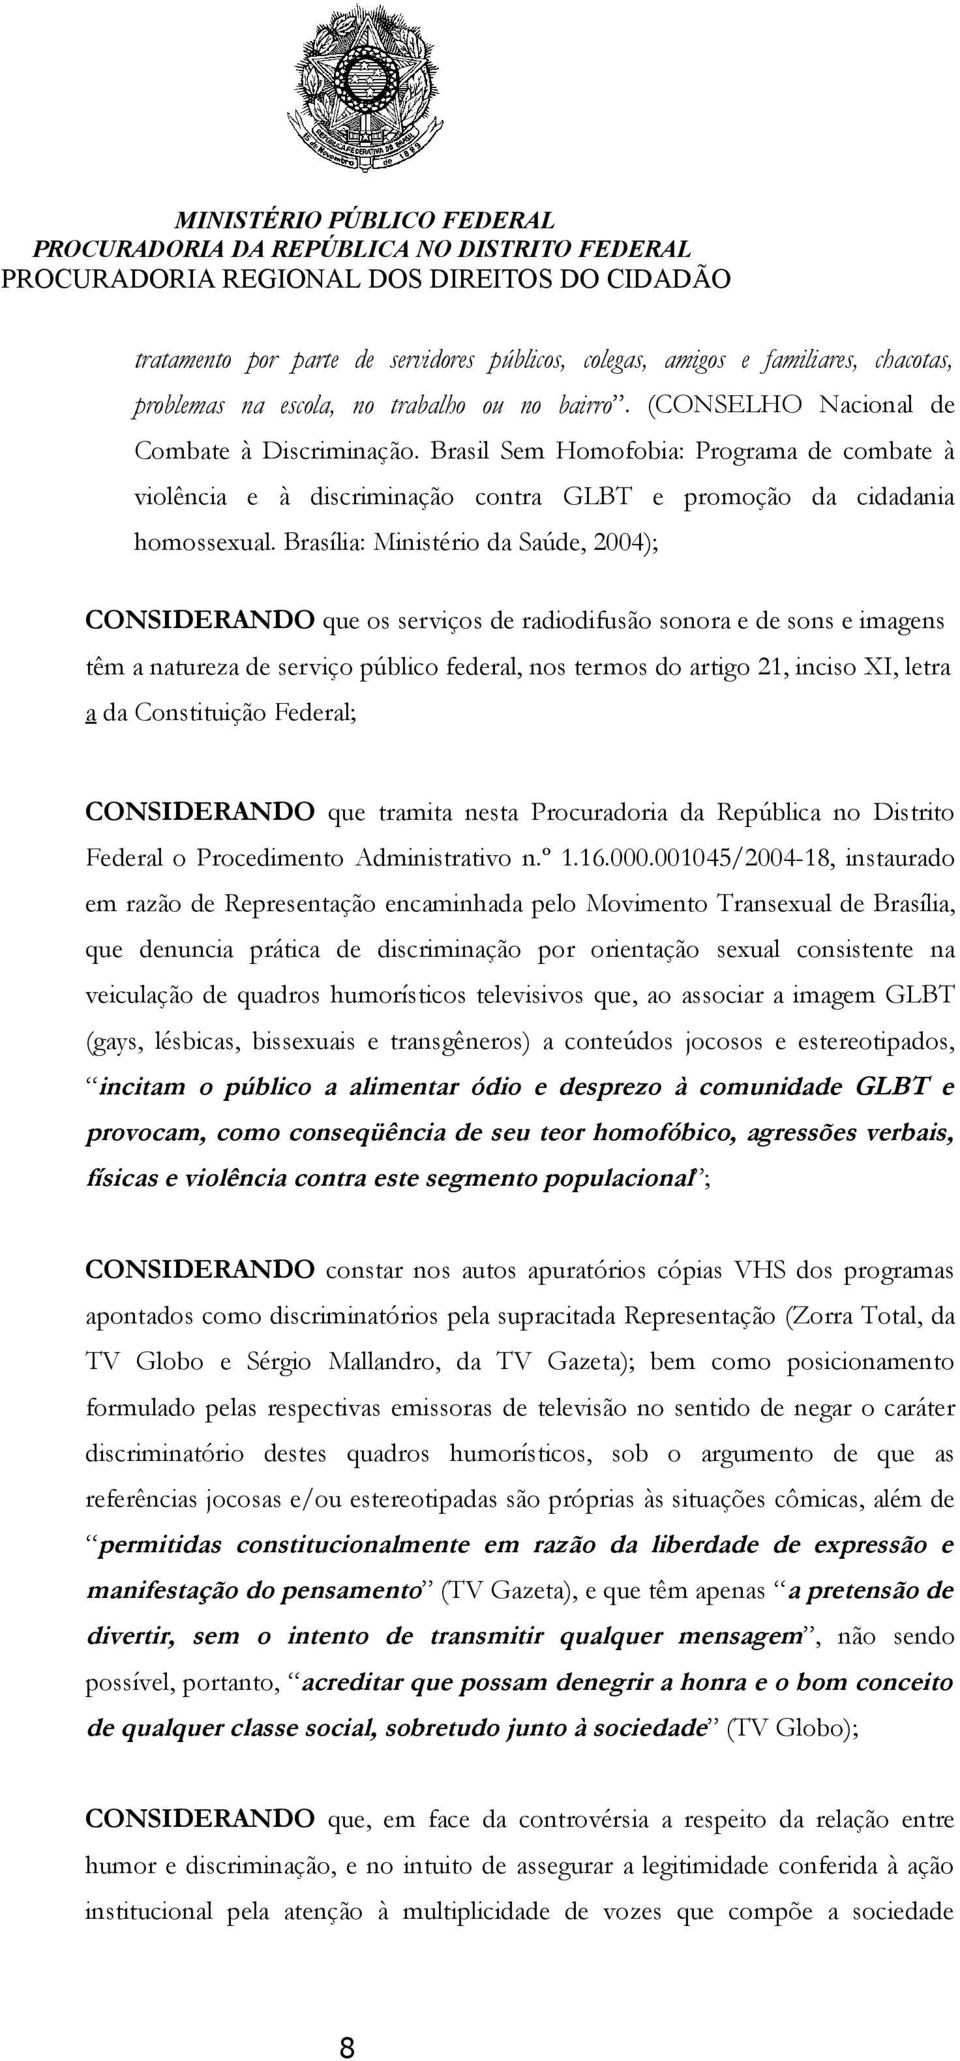 Brasília: Ministério da Saúde, 2004); CONSIDERANDO que os serviços de radiodifusão sonora e de sons e imagens têm a natureza de serviço público federal, nos termos do artigo 21, inciso XI, letra a da